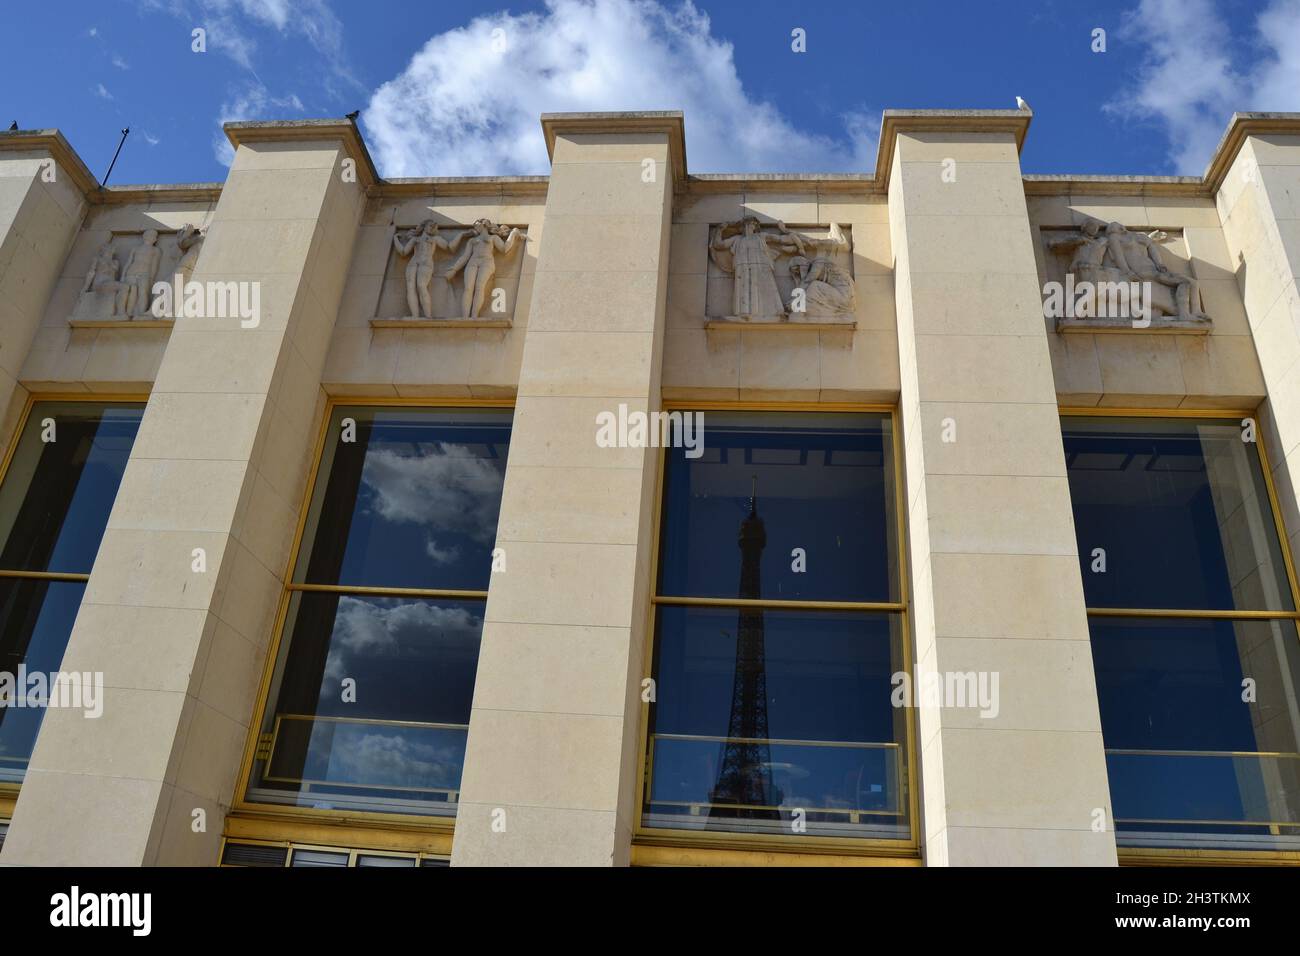 20.02.2012. Paris. Frankreich. Berühmter eiffelturm Reflexion auf dem Regierungsgebäude und es gibt Skulpturen Wand vor ihm. Stockfoto